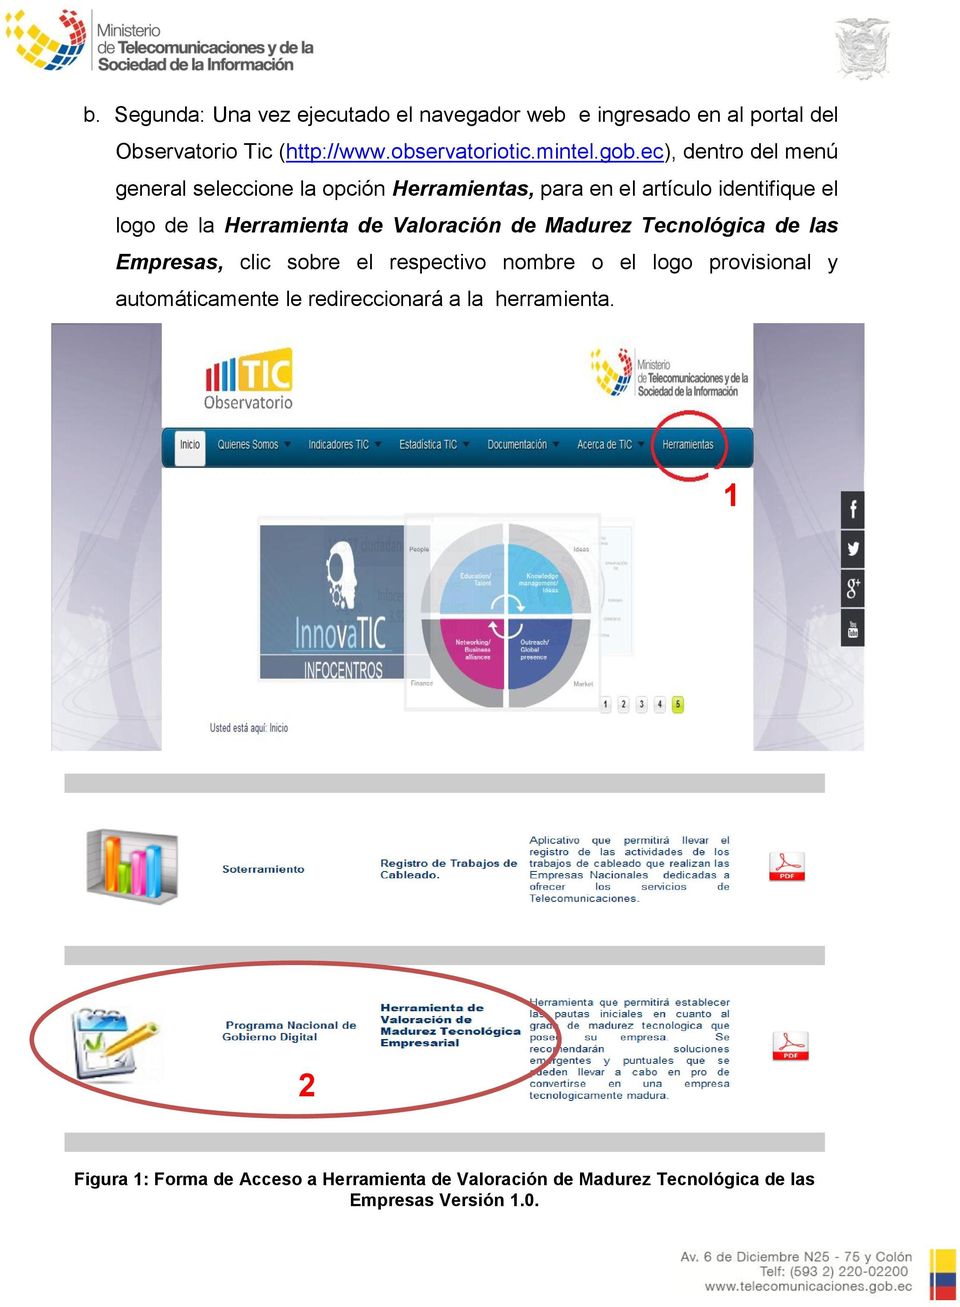 Valoración de Madurez Tecnológica de las Empresas, clic sobre el respectivo nombre o el logo provisional y automáticamente le